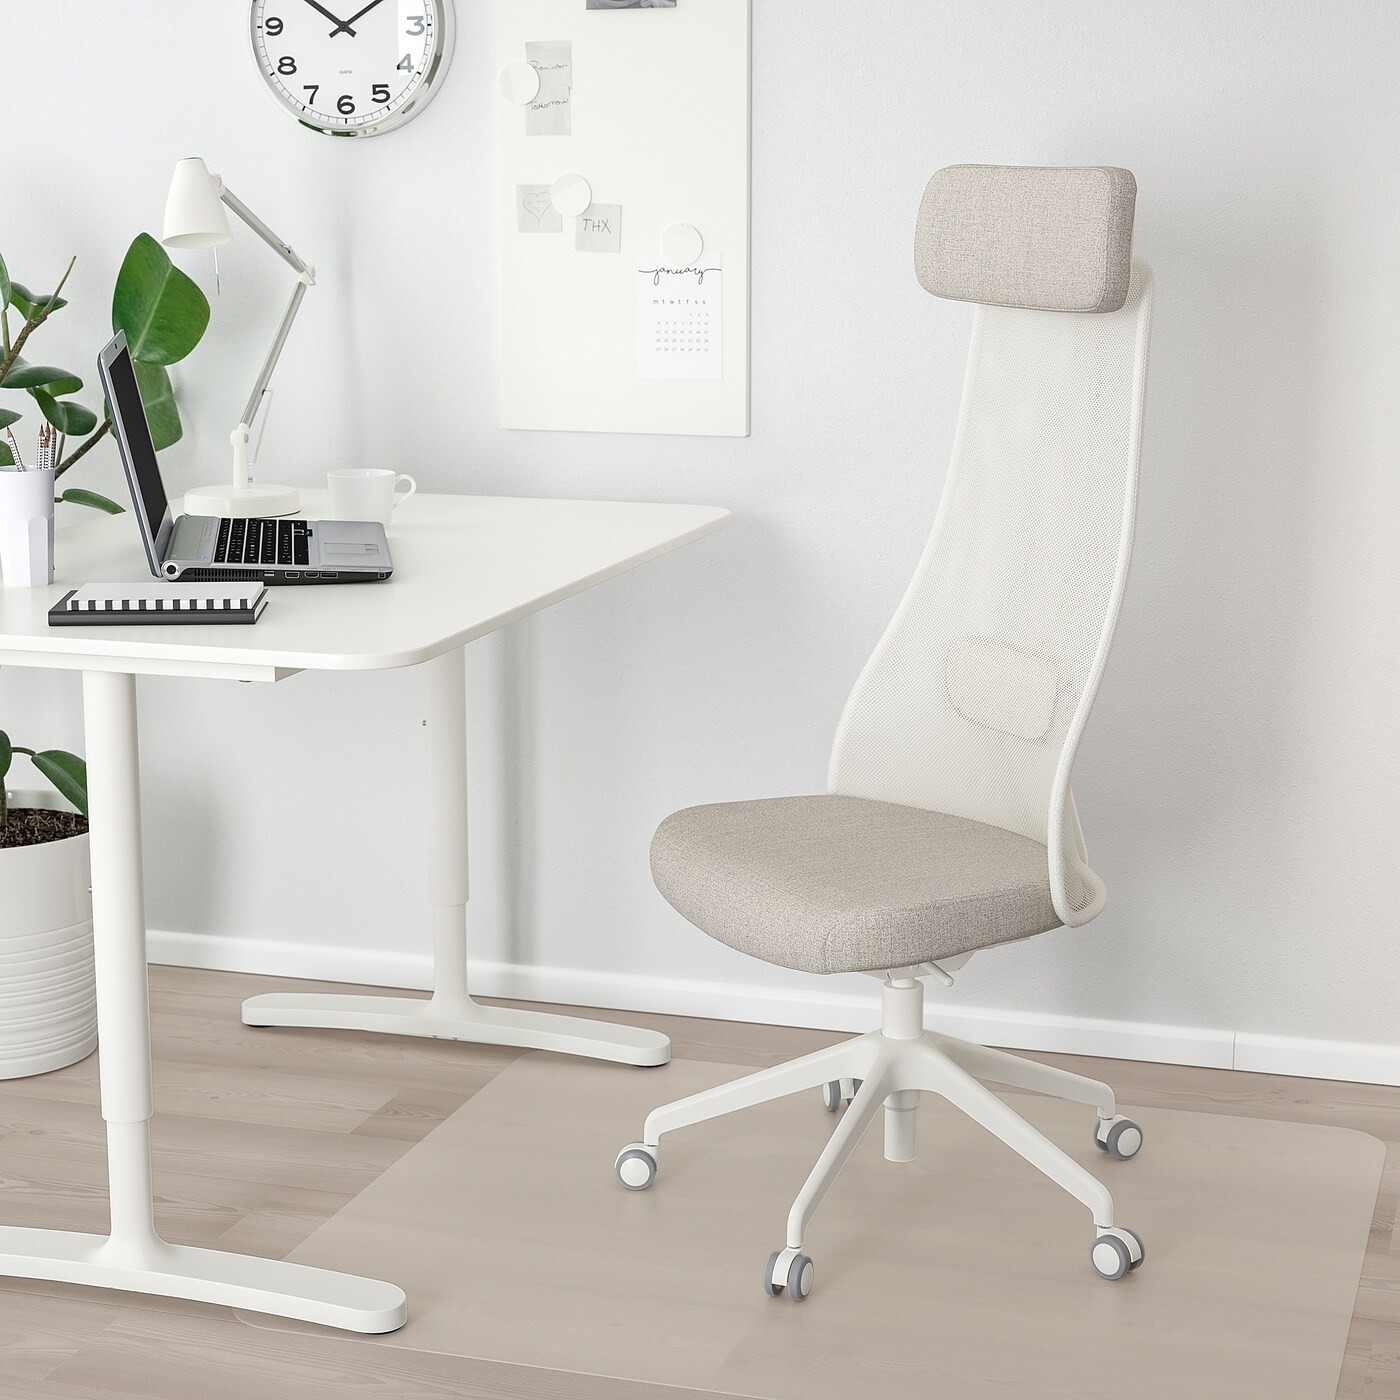 JÄRVFJÄLLET Office chair